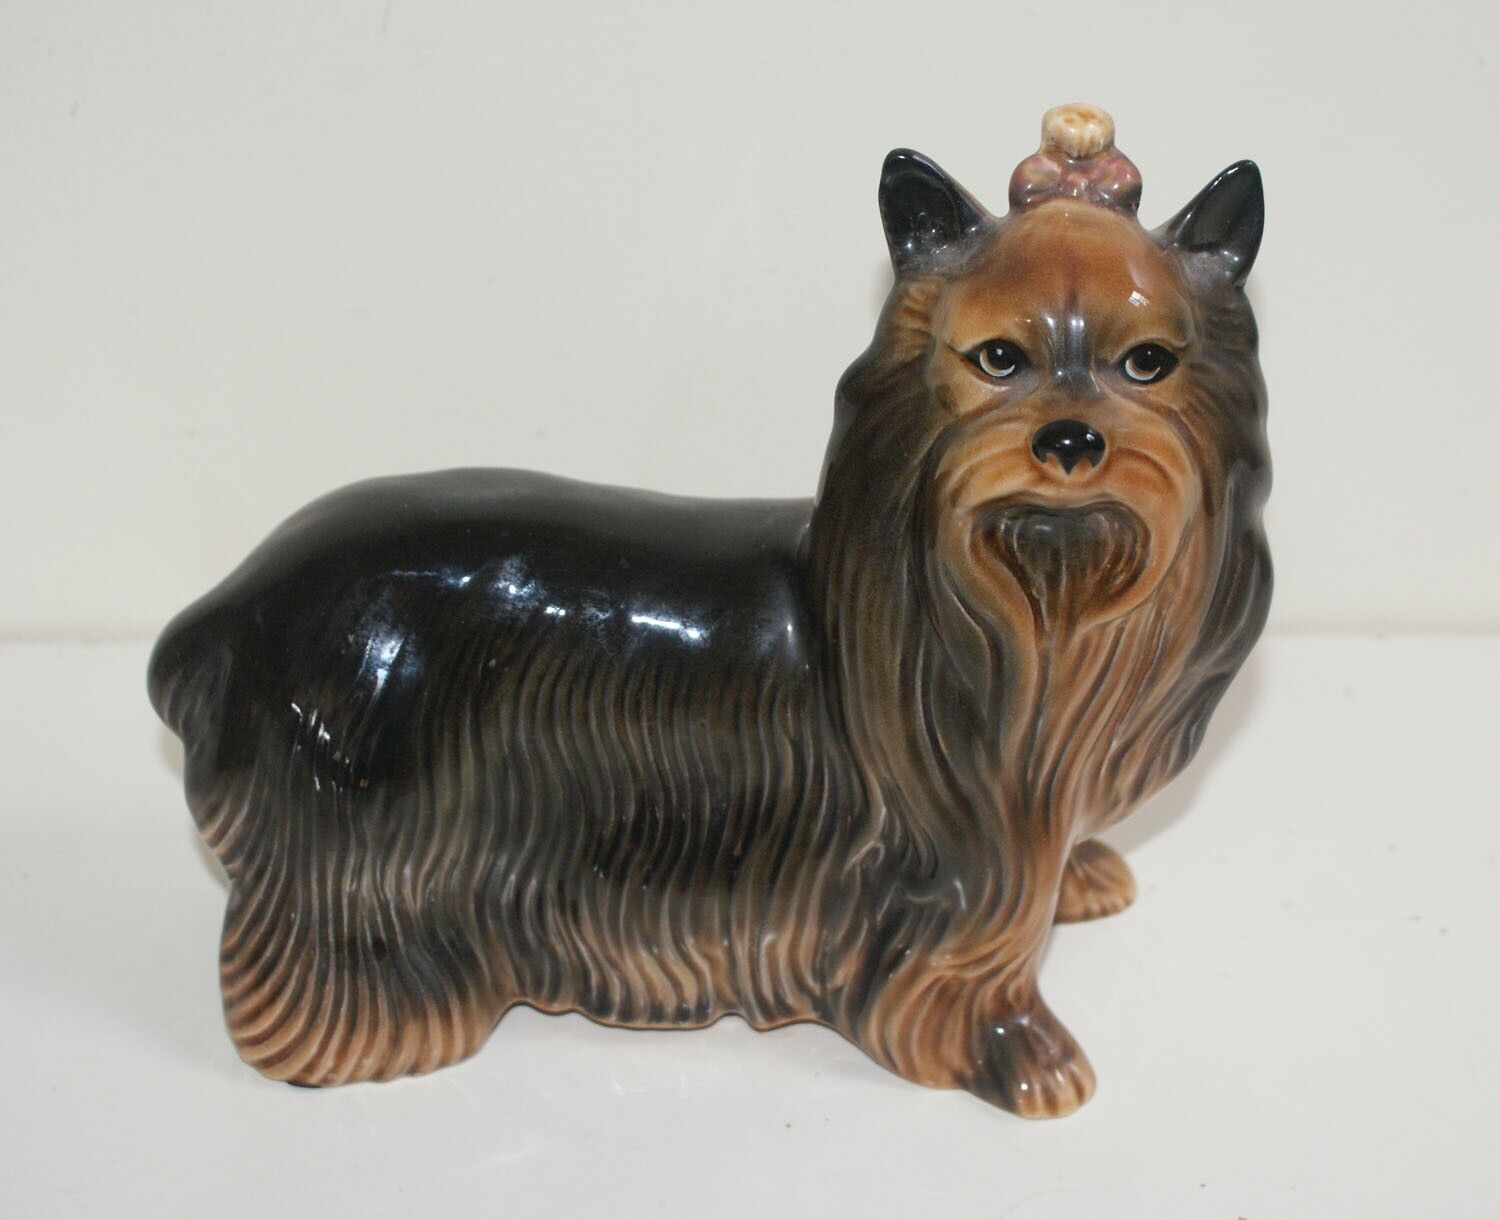 Vintage Large COOPERCRAFT England Yorkshire Terrier Dog Figurine, Ornament.